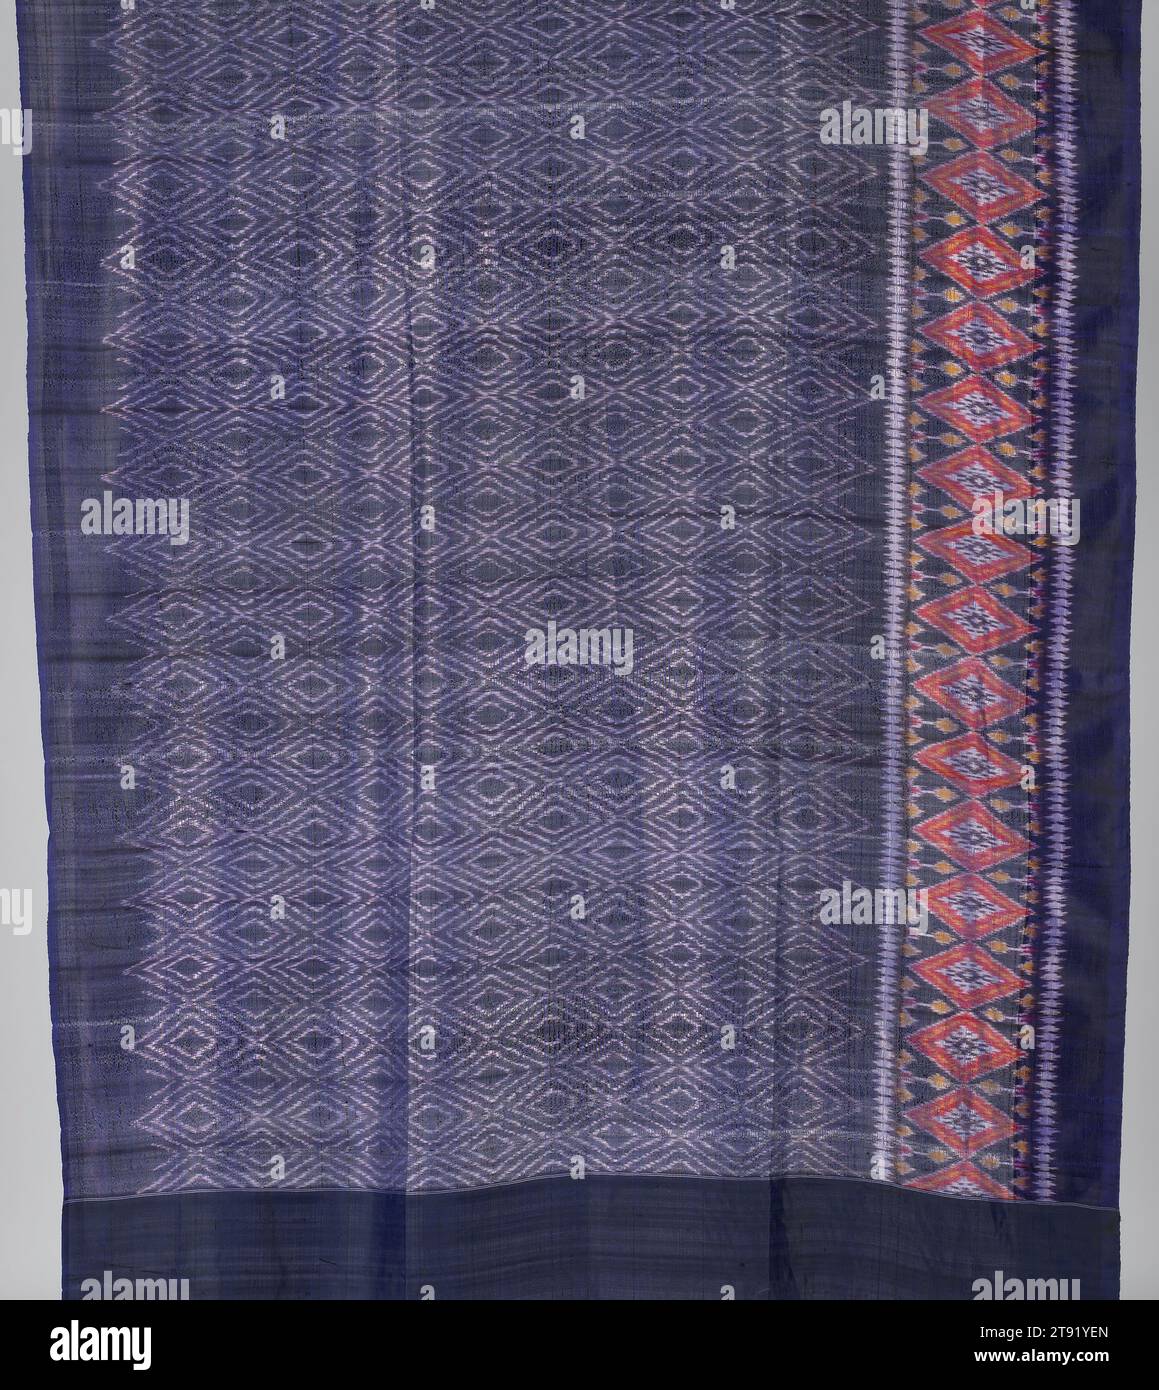 Sari, c. 1970, 160 x 42 1/4 in. (406.4 x 107.32 cm), Silk; weft ikat, India, 20th century Stock Photo